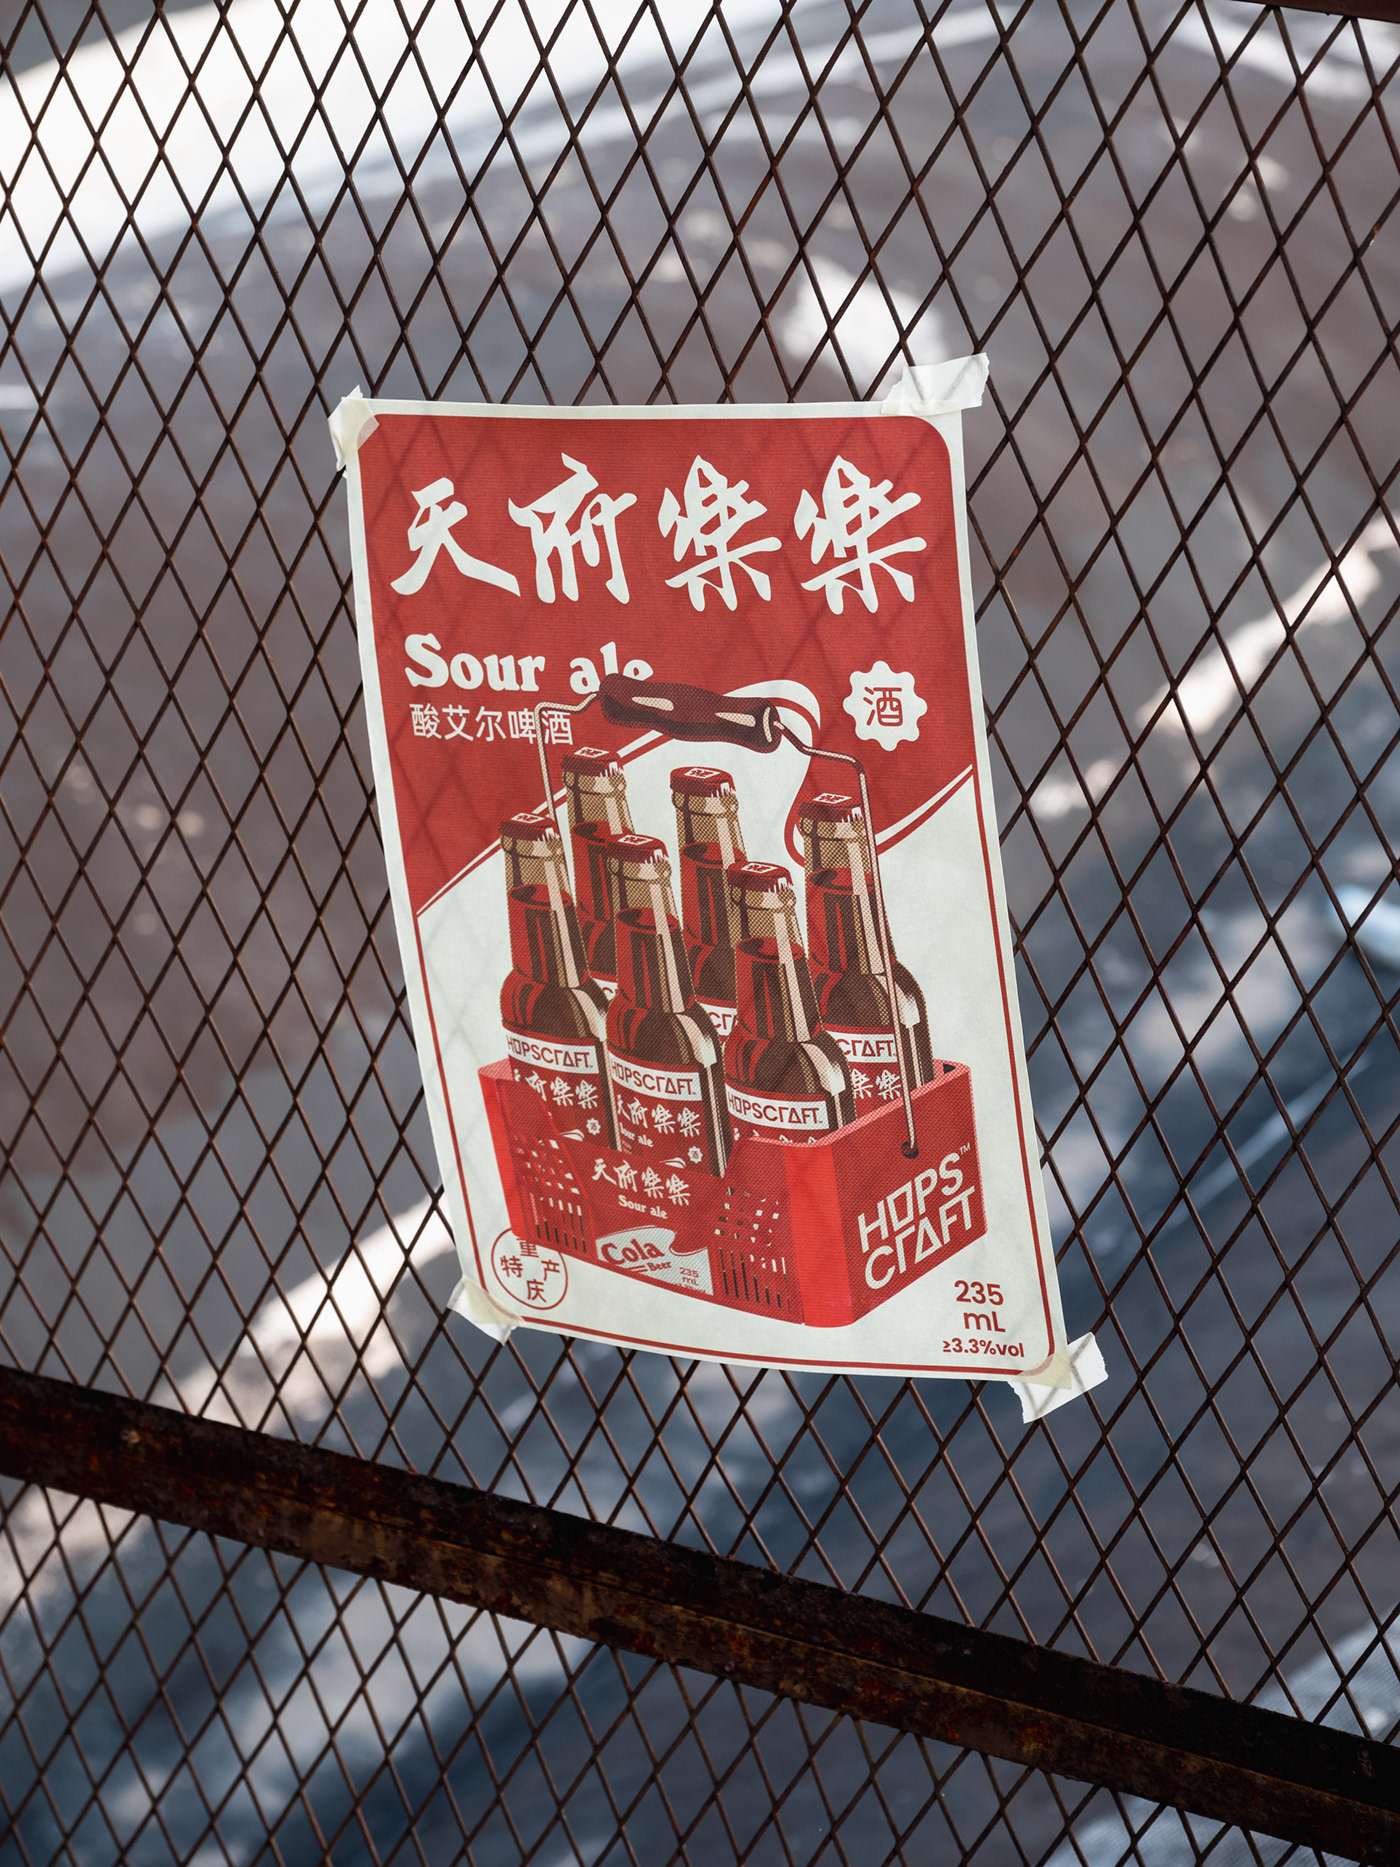 cola beer hops Packaging